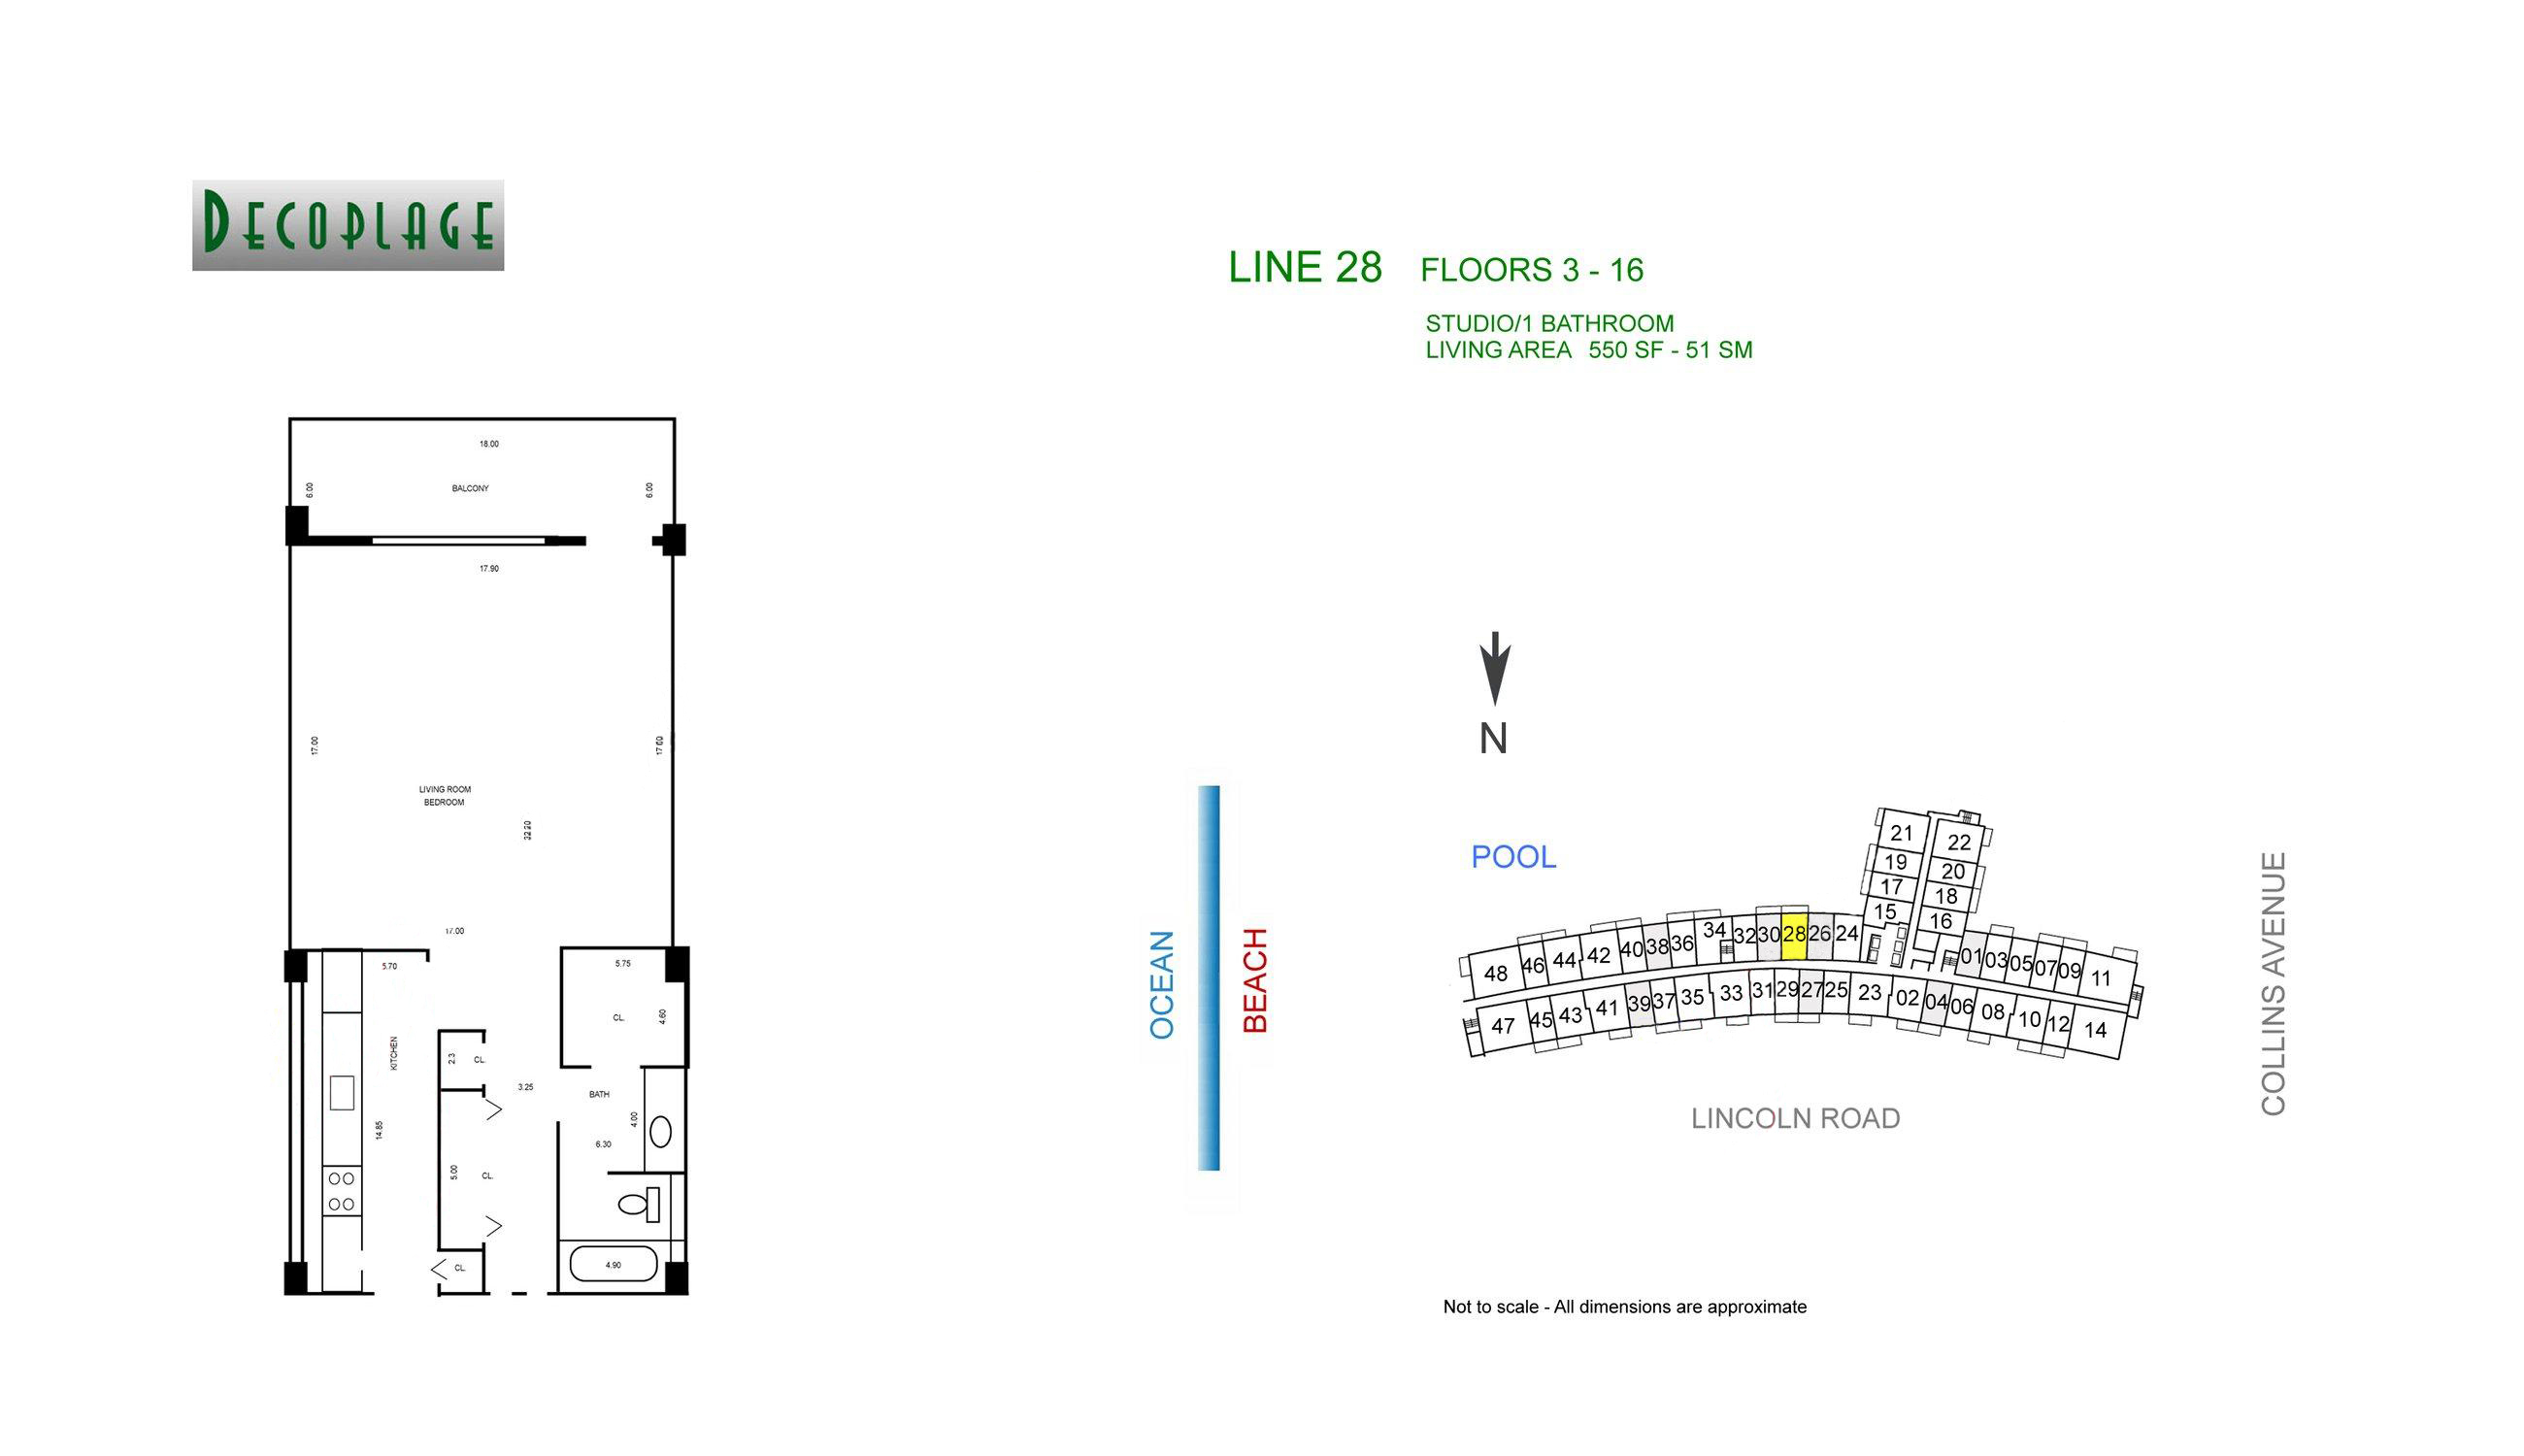 Decoplage Lines 28 Floors 3-16